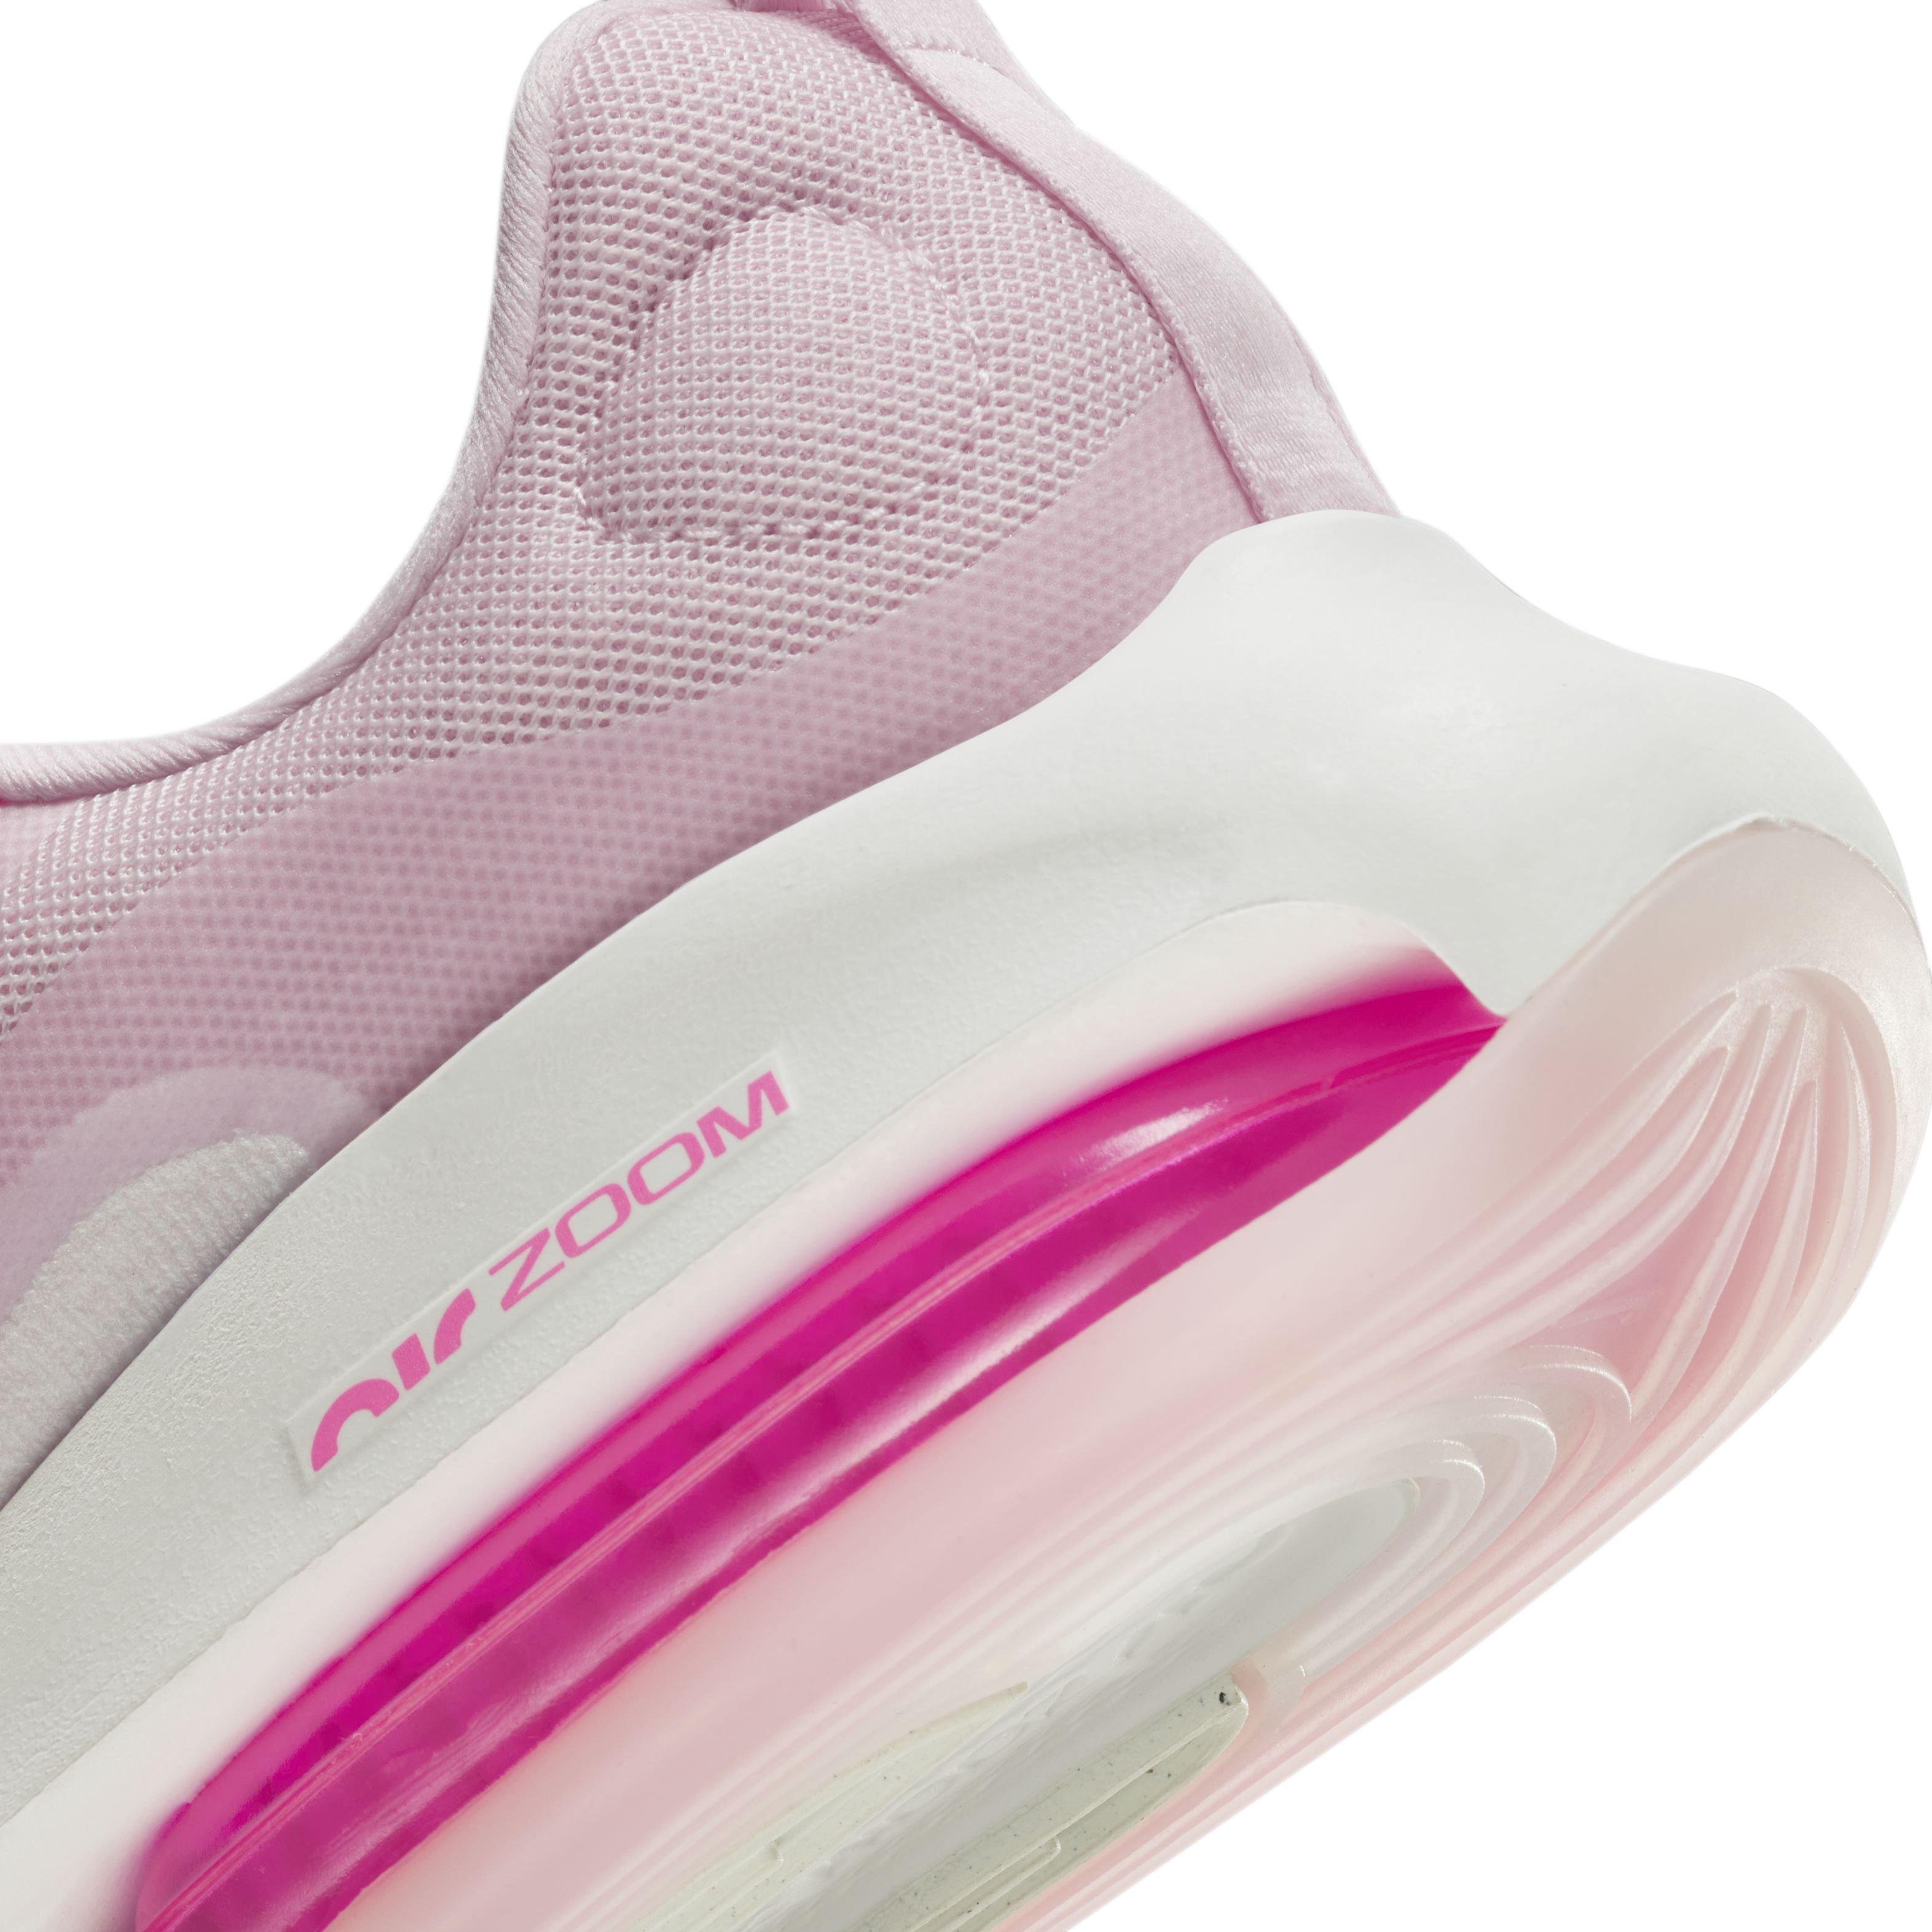 Nike Air Max 270 Hyper Pink Women's Shoe - Hibbett